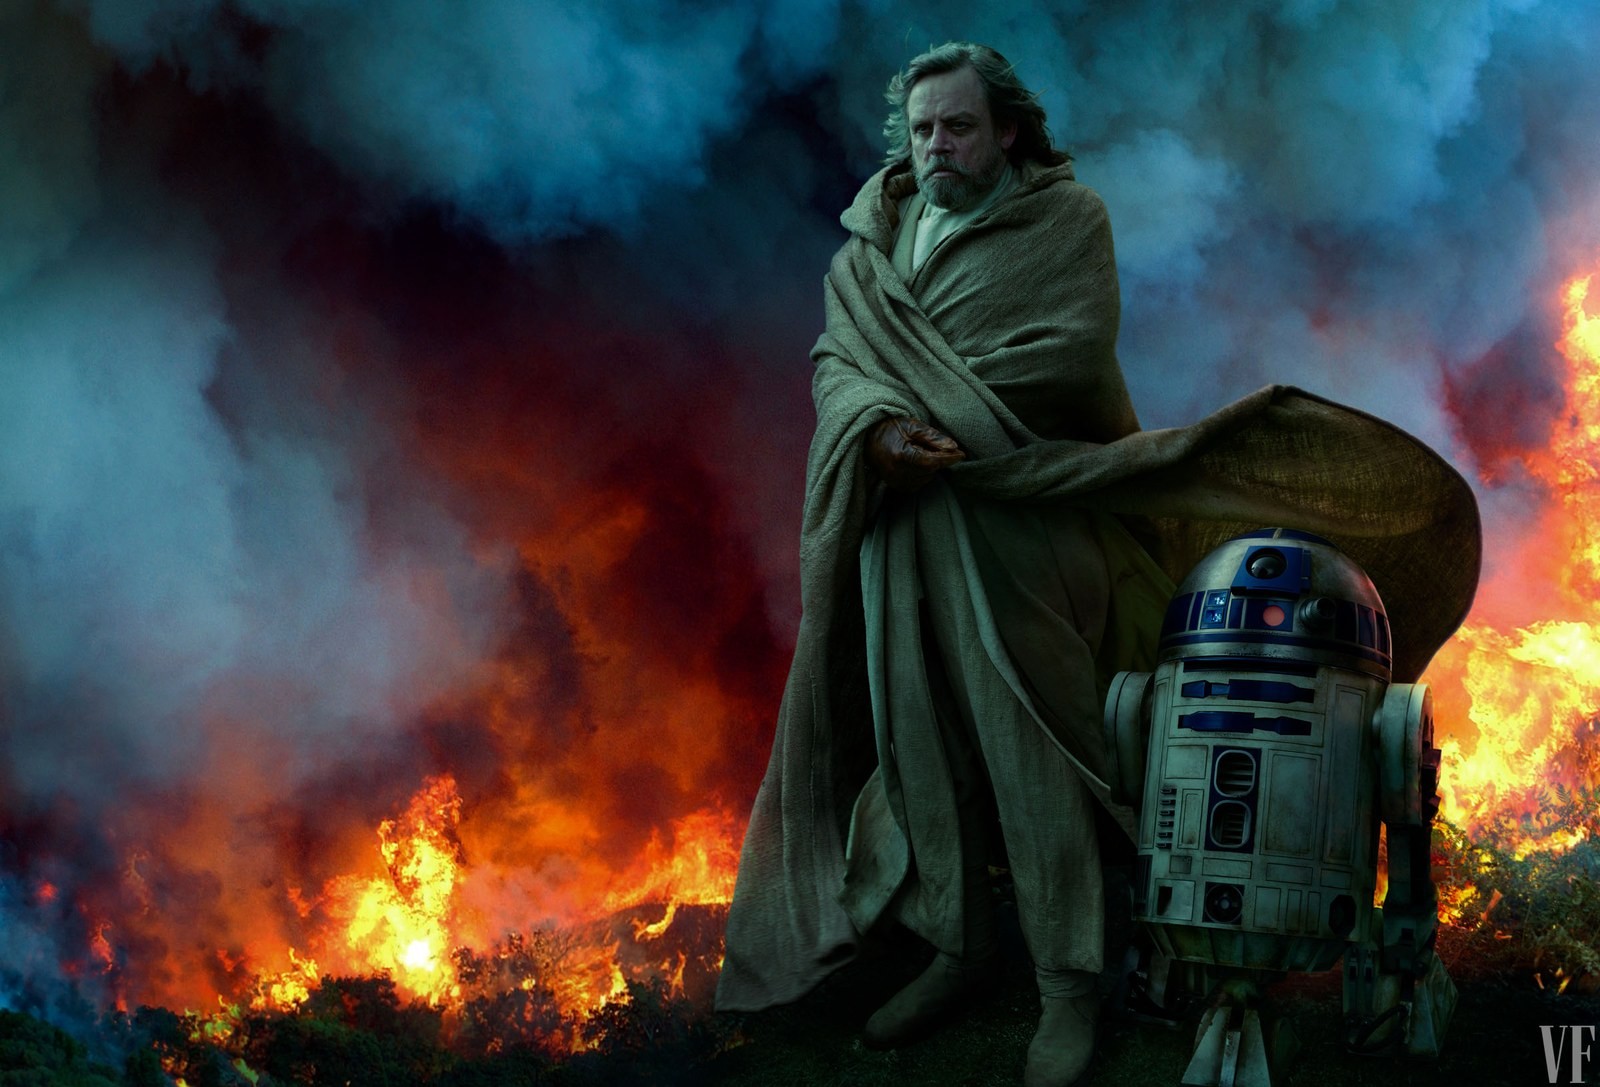 Star Wars Celebration: painel revela novos personagens e imagens inéditas  de filme - Revista Galileu